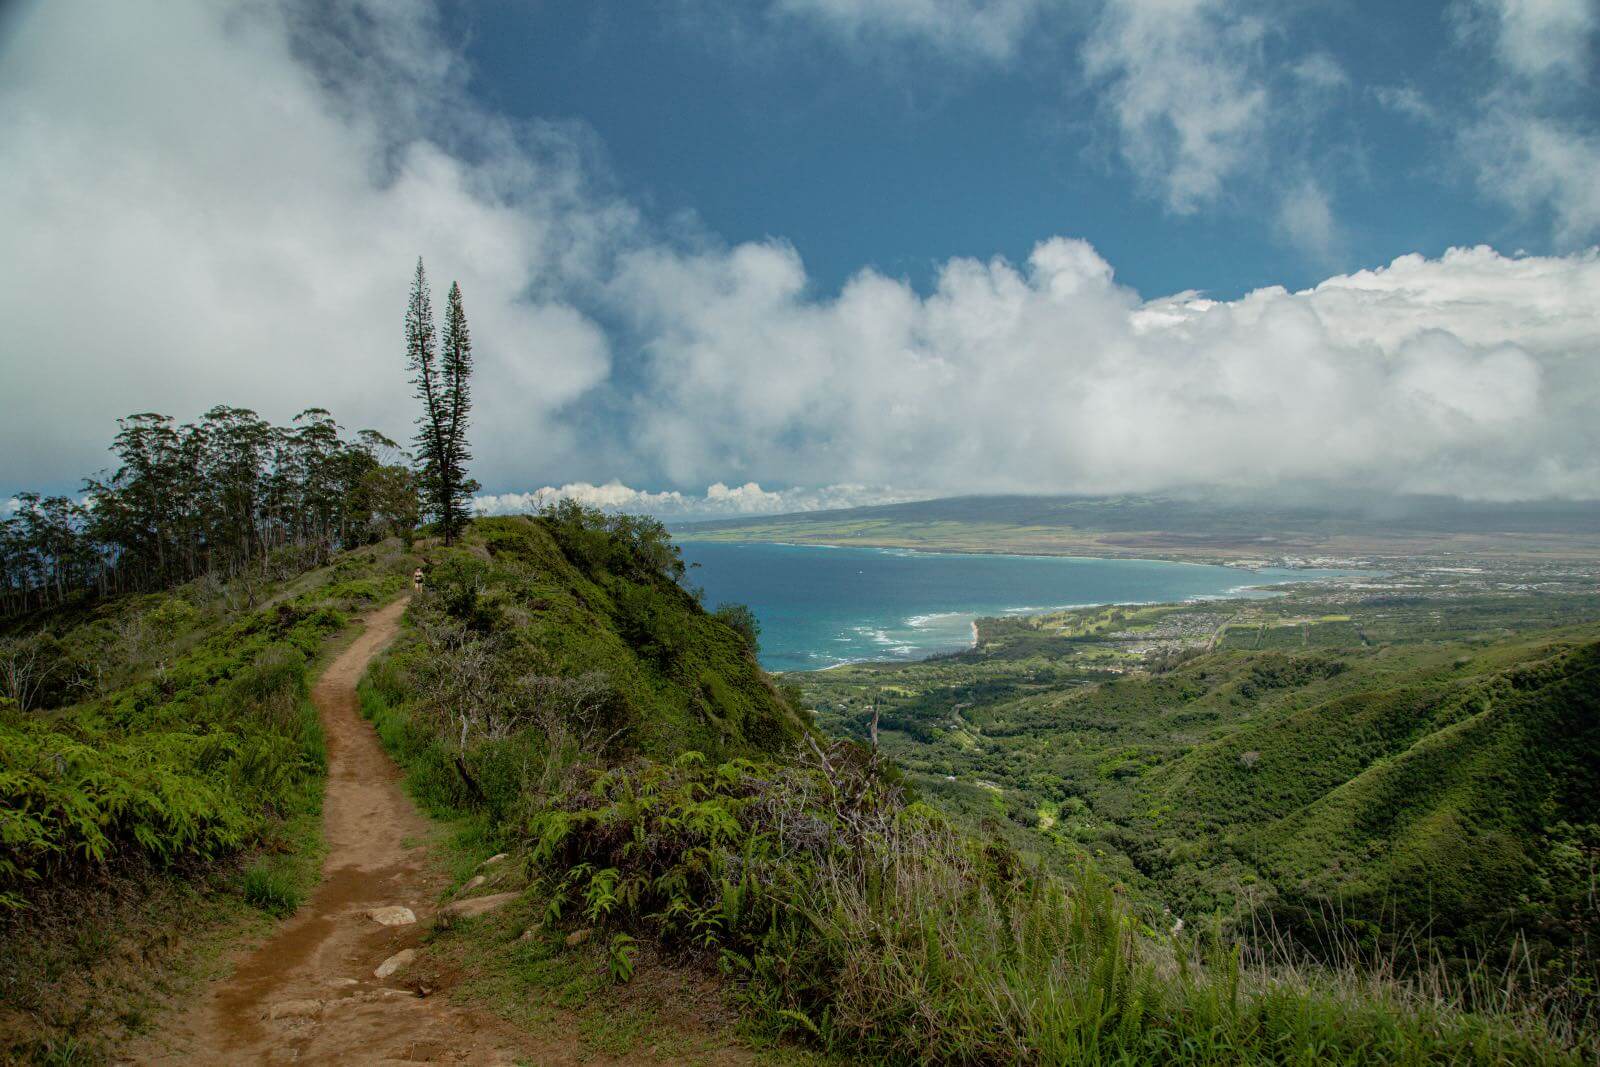 The Ridge Trail with ocean Views